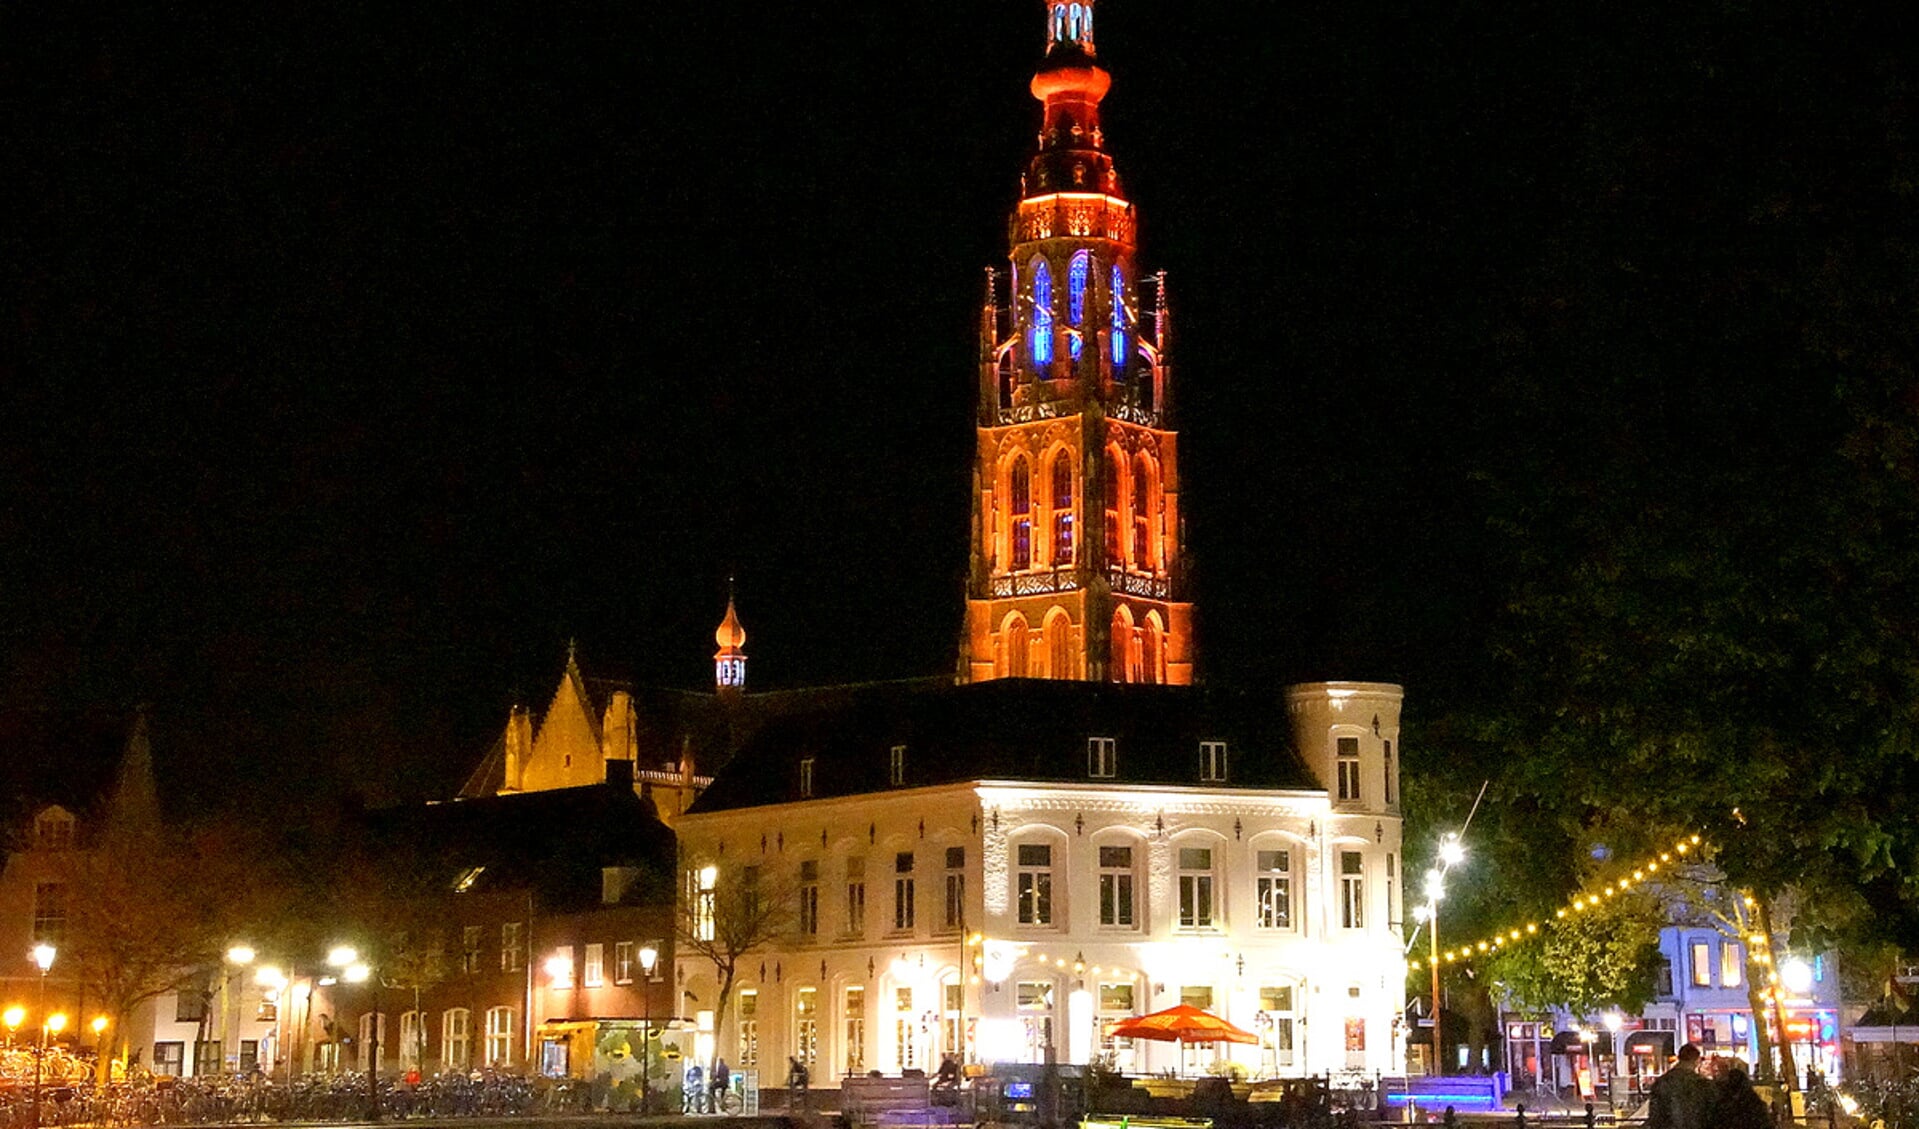 De Grote Kerk kleurde eerder oranje. Zondag en maandag wordt ie wit, als eerbetoon aan de overleden Paoter Sjaggerijn.